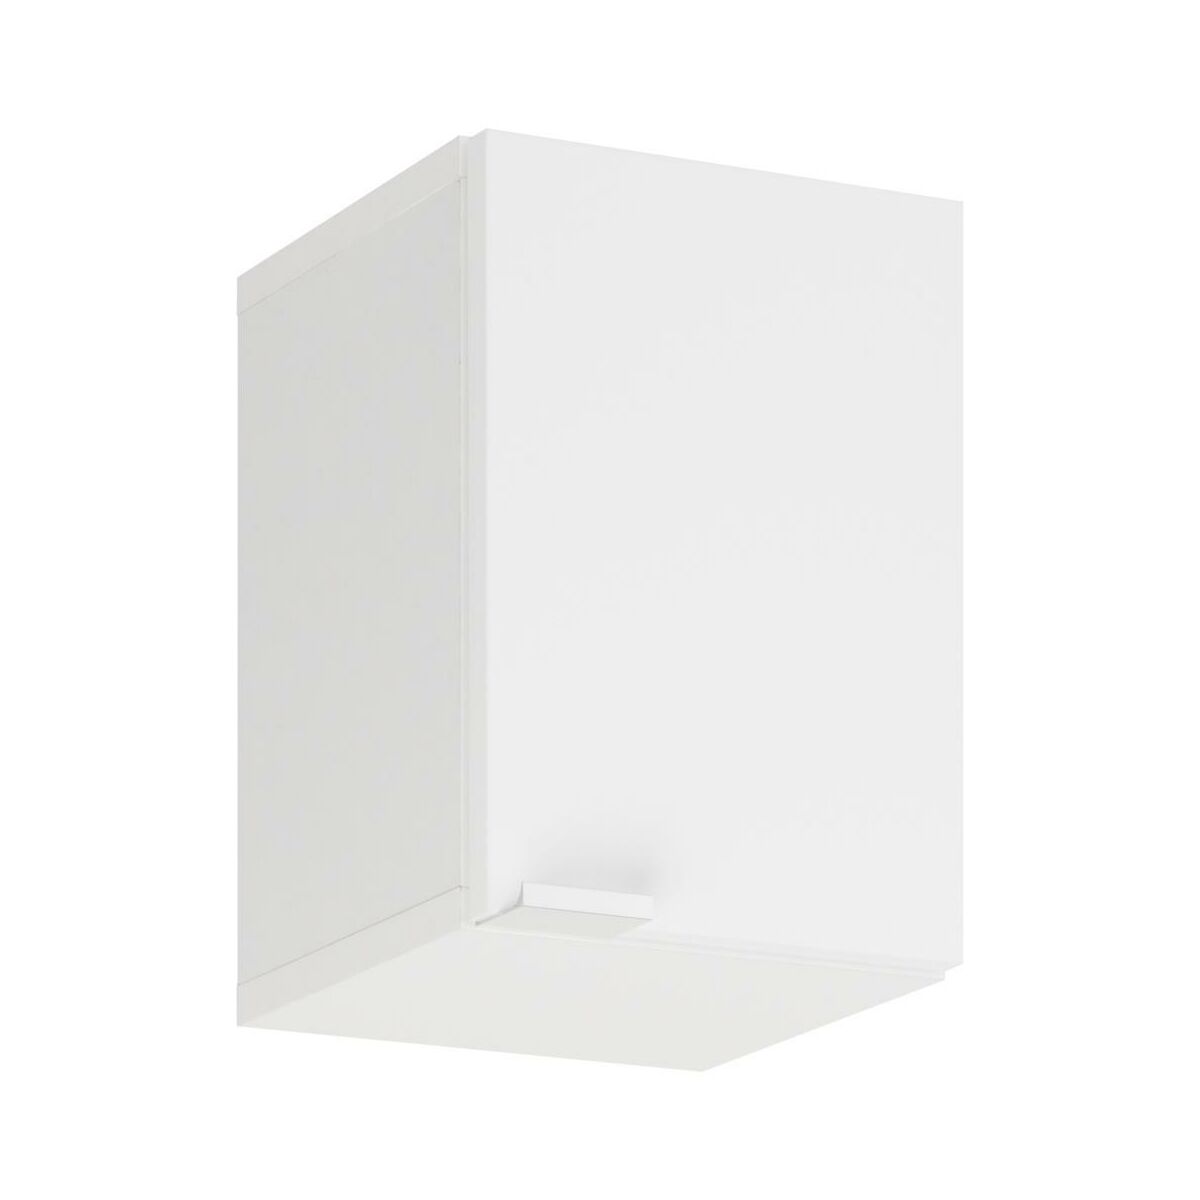 Подвесной шкафчик для ванной комнаты Defra Multi 06002, белый